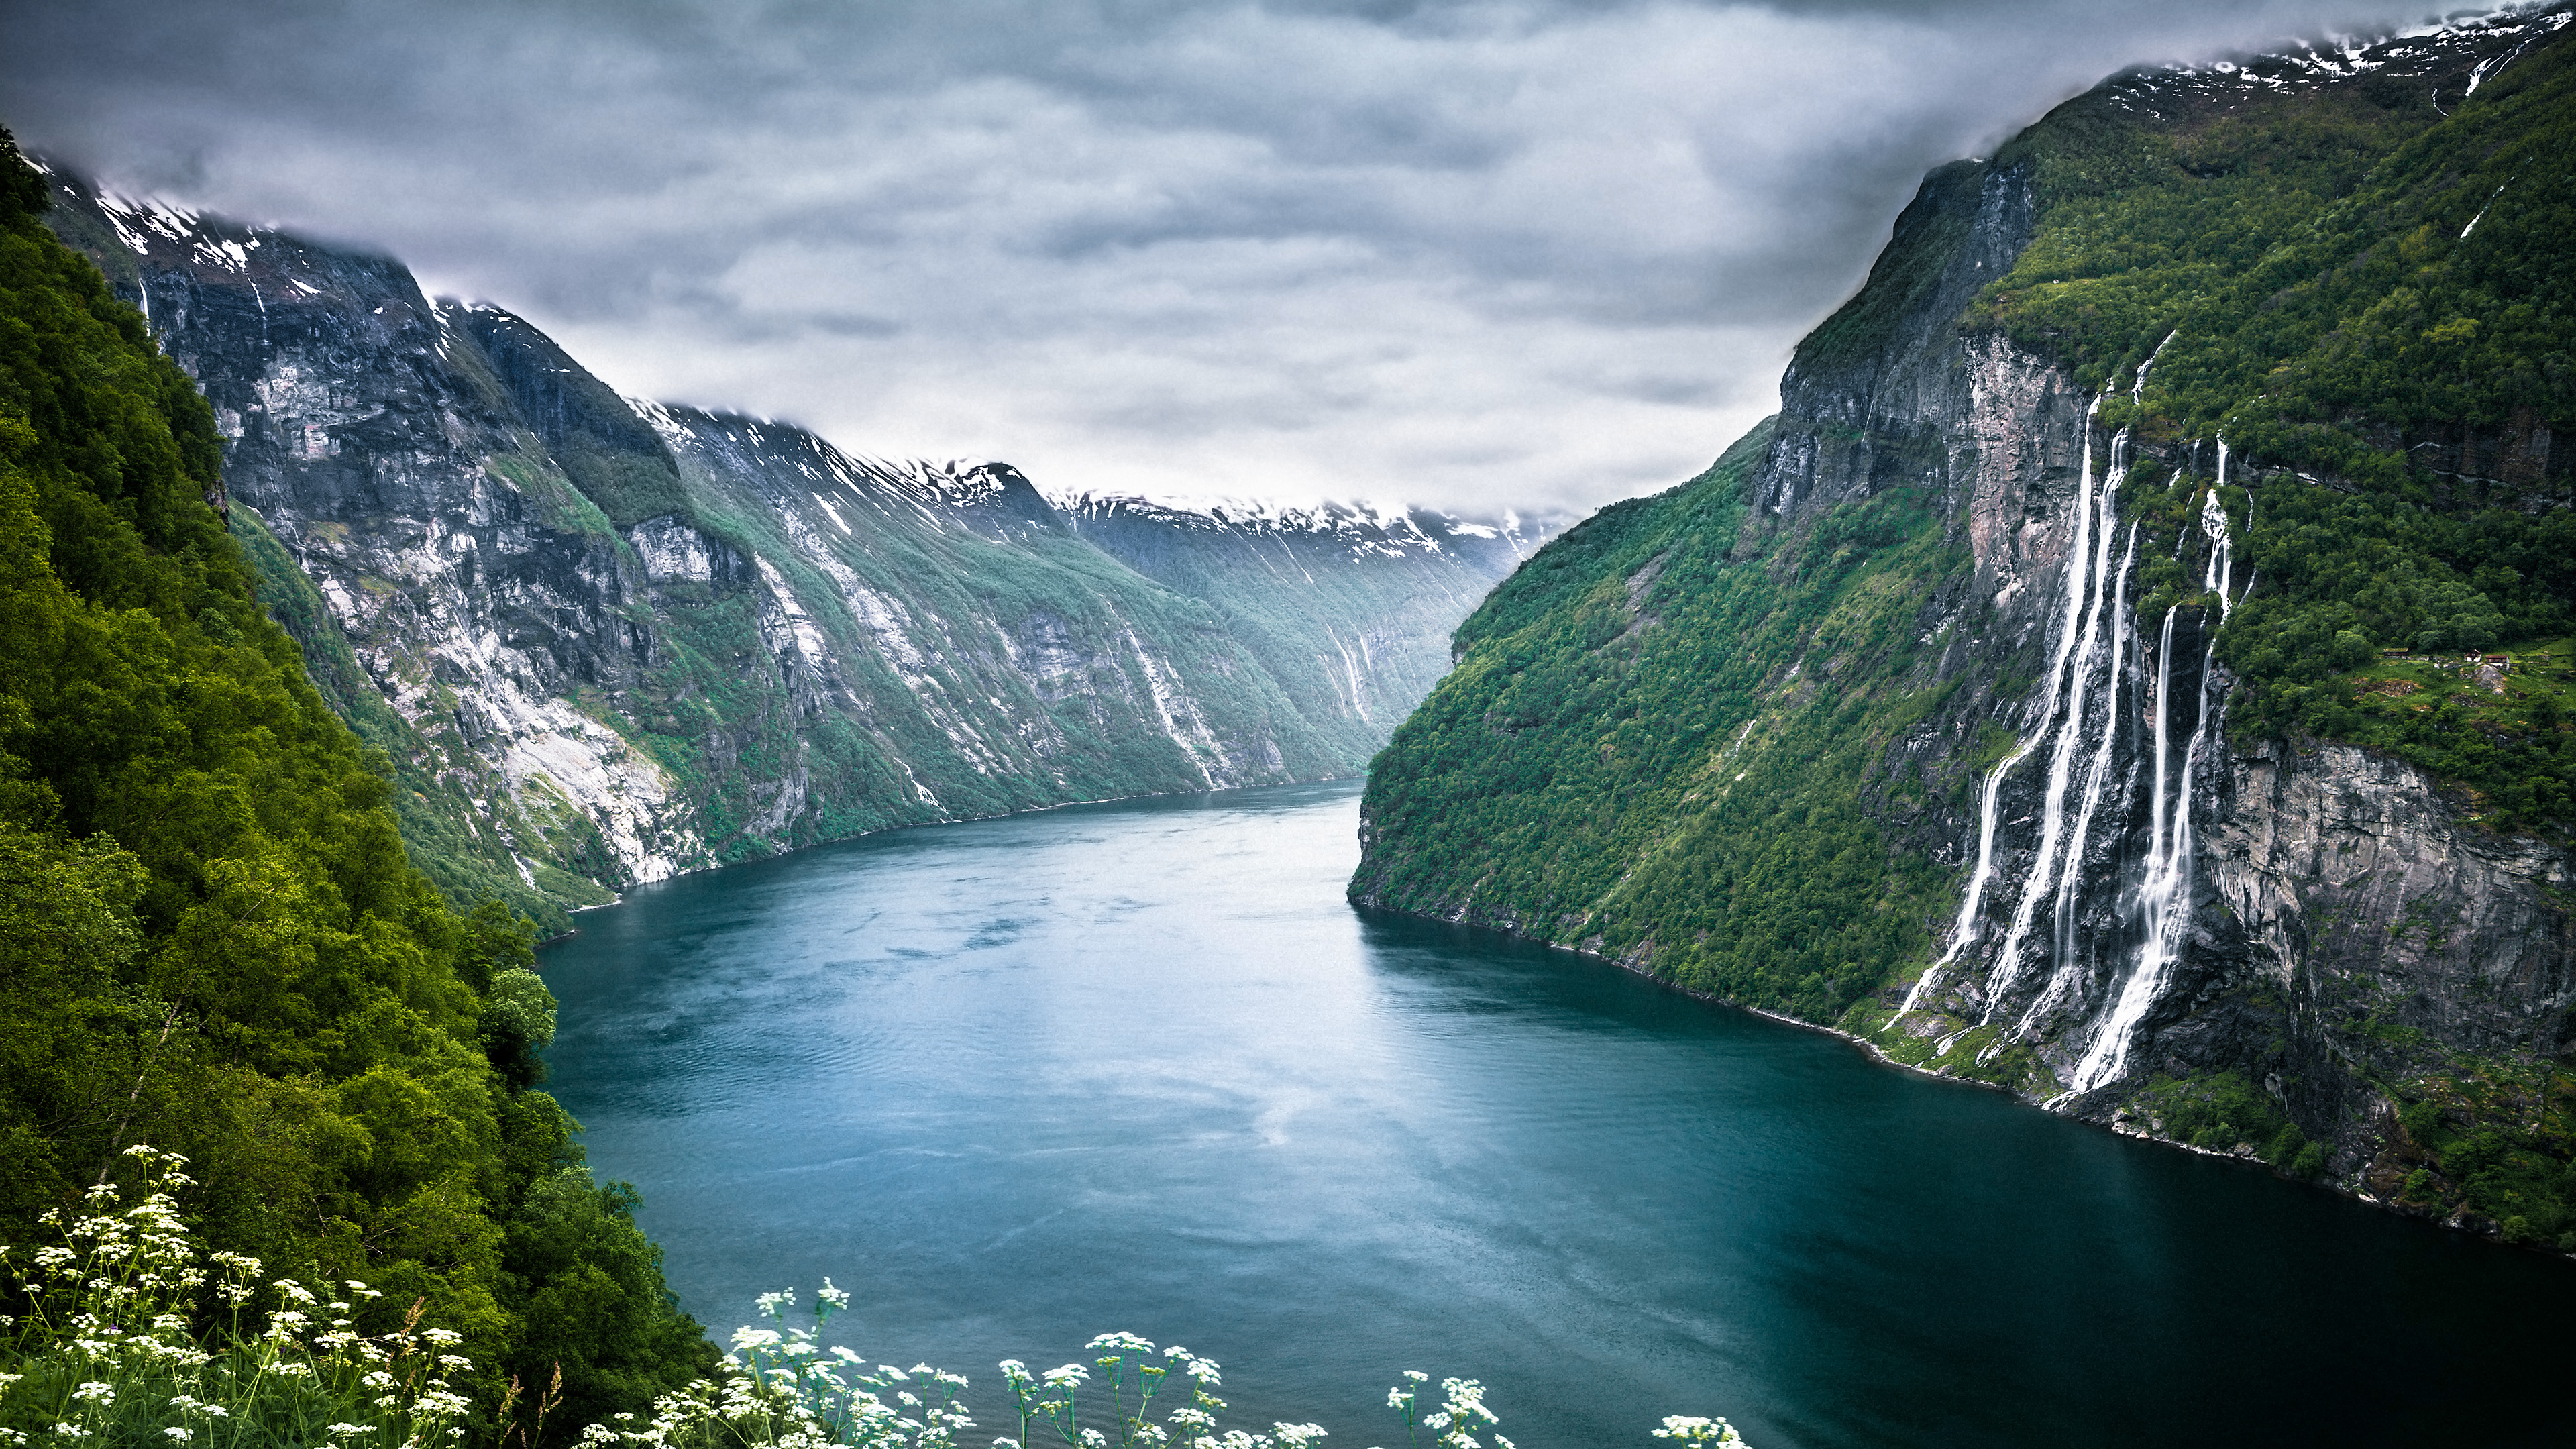 fond d'écran nature 1920x1080,paysage naturel,fjord,plan d'eau,la nature,ressources en eau